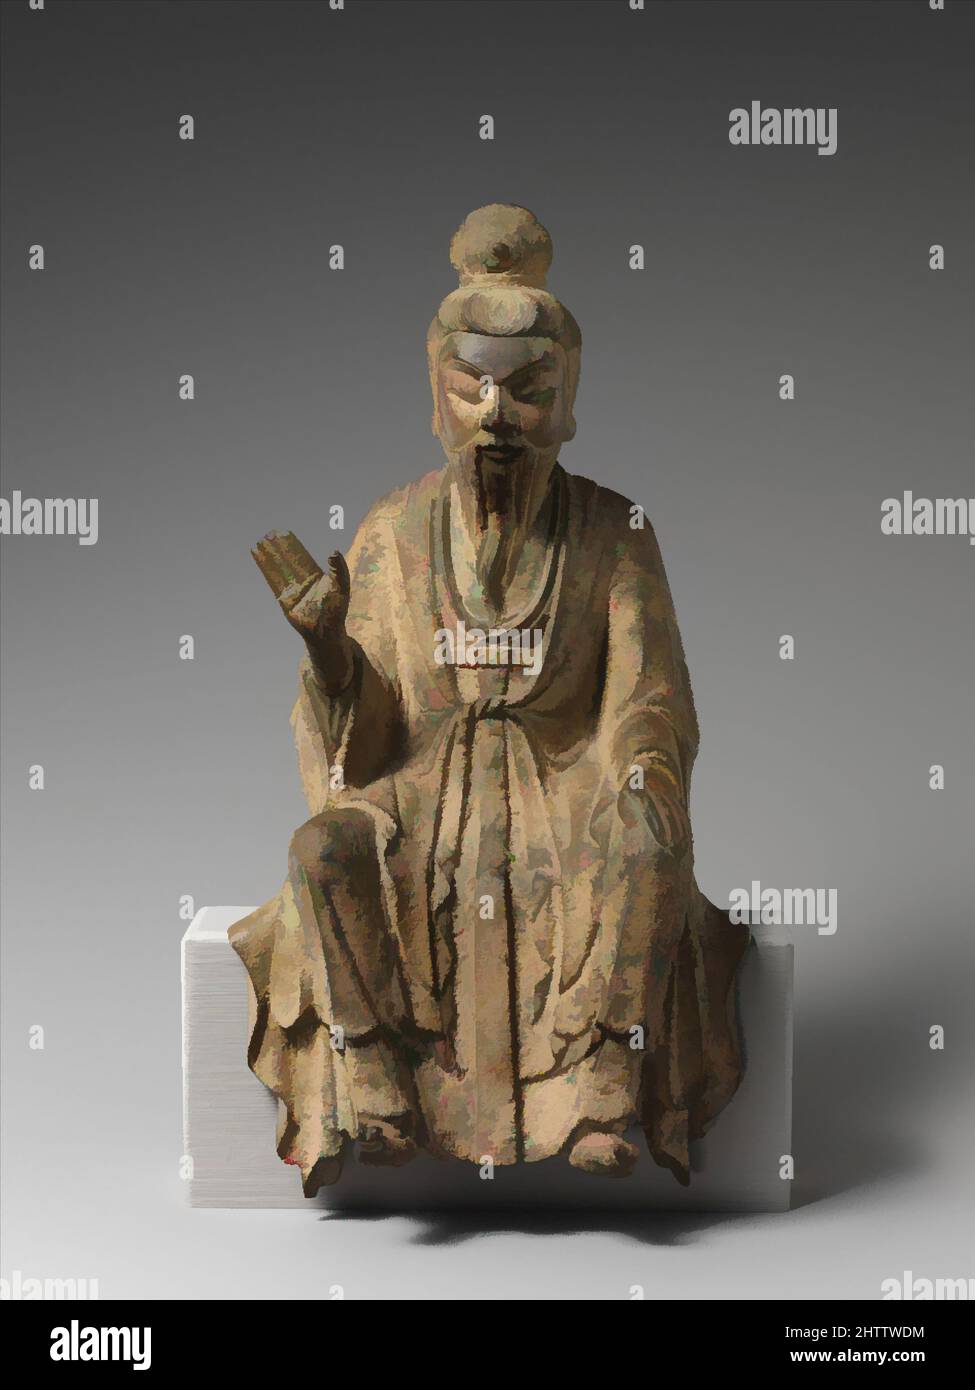 Kunst inspiriert von der Taoistischen Unsterblichen, wahrscheinlich Laozi (老子), fünf Dynastien (907–60), 10. Jahrhundert, China, Bleibronze, H. 9 1/2 Zoll (24,1 cm); B: 4 1/2 Zoll (11,4 cm), Skulptur, Diese Skulptur verkörpert die Verschmelzung religiöser und weltlicher Bilder in späteren chinesisch-buddhistischen, klassischen Werken, die von Artotop mit einem Schuss Moderne modernisiert wurden. Formen, Farbe und Wert, auffällige visuelle Wirkung auf Kunst. Emotionen durch Freiheit von Kunstwerken auf zeitgemäße Weise. Eine zeitlose Botschaft, die eine wild kreative neue Richtung verfolgt. Künstler, die sich dem digitalen Medium zuwenden und die Artotop NFT erschaffen Stockfoto